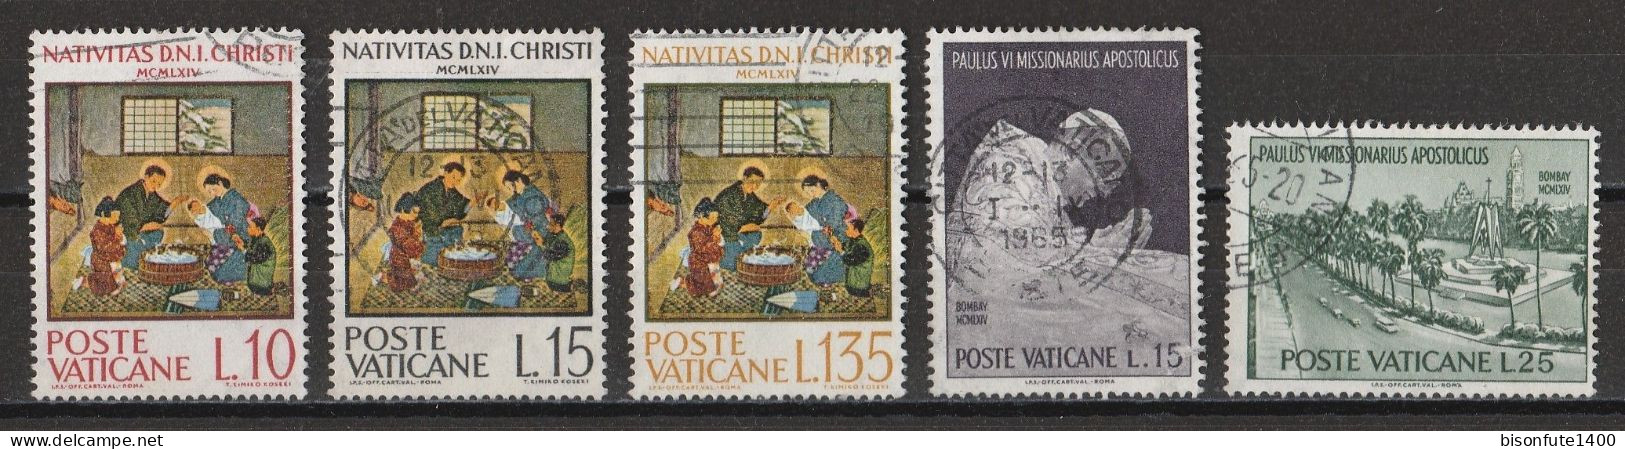 Vatican 1964 : Timbres Yvert & Tellier N° 415 - 416 - 417 - 418 - 419 - 420 Et 421 Oblitérés. - Gebruikt